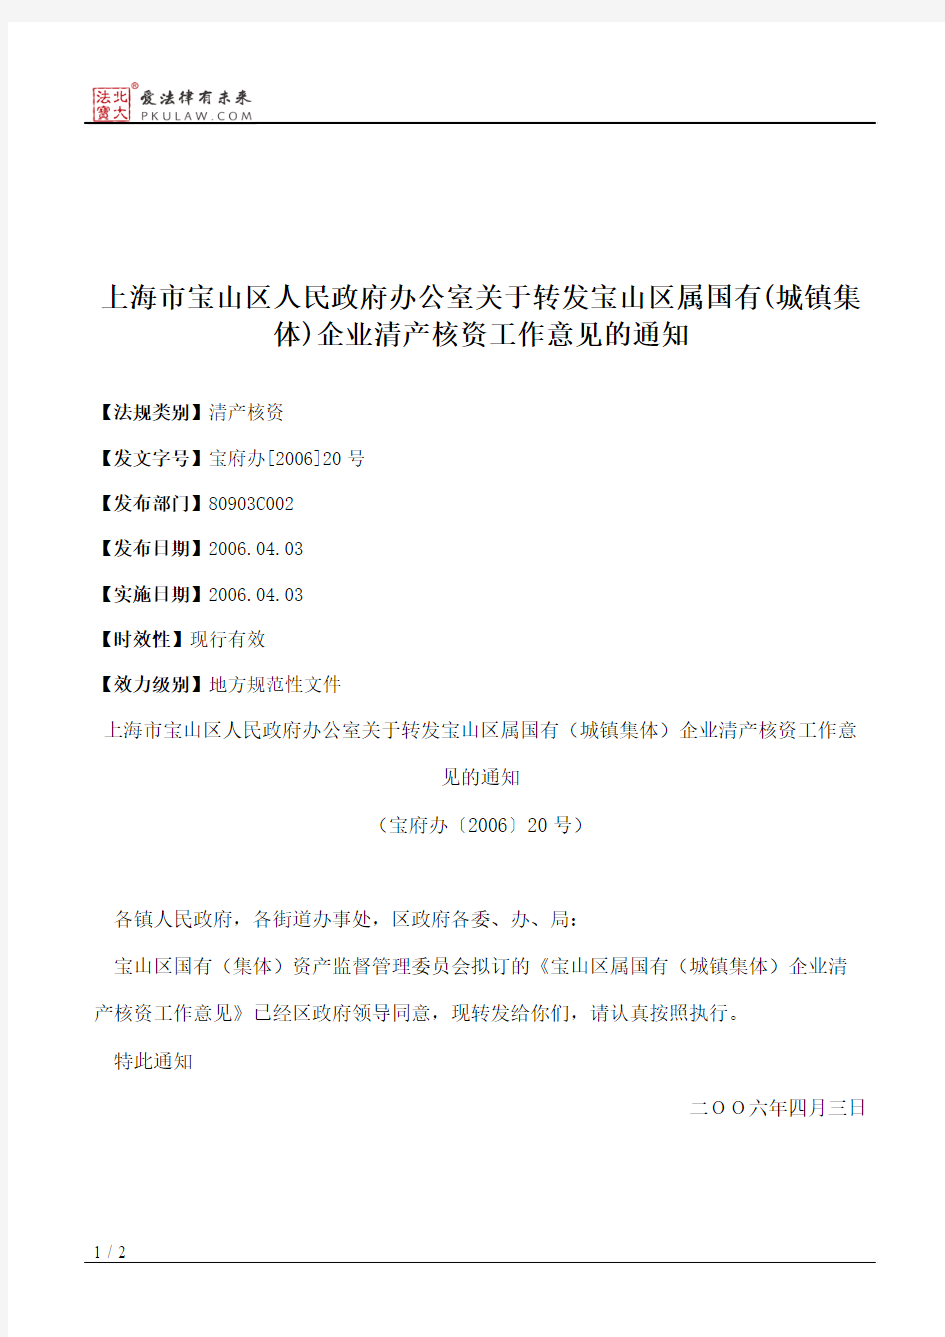 上海市宝山区人民政府办公室关于转发宝山区属国有(城镇集体)企业